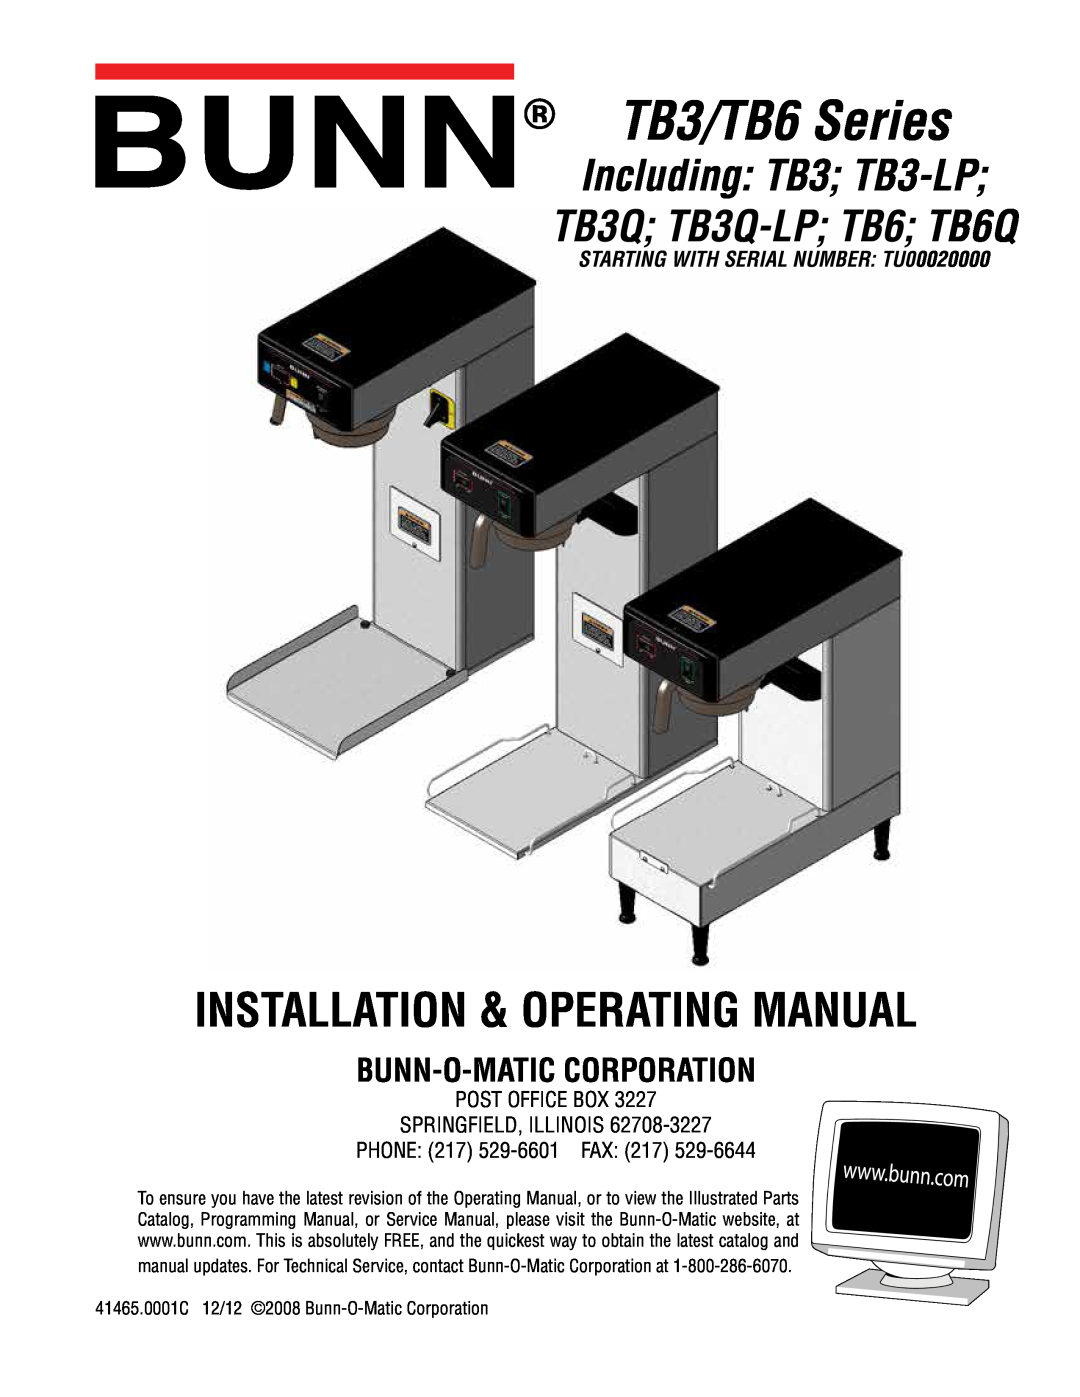 Bunn service manual TB3/TB6 Series, Installation & Operating Manual, Including TB3 TB3-LP TB3Q TB3Q-LP TB6 TB6Q 